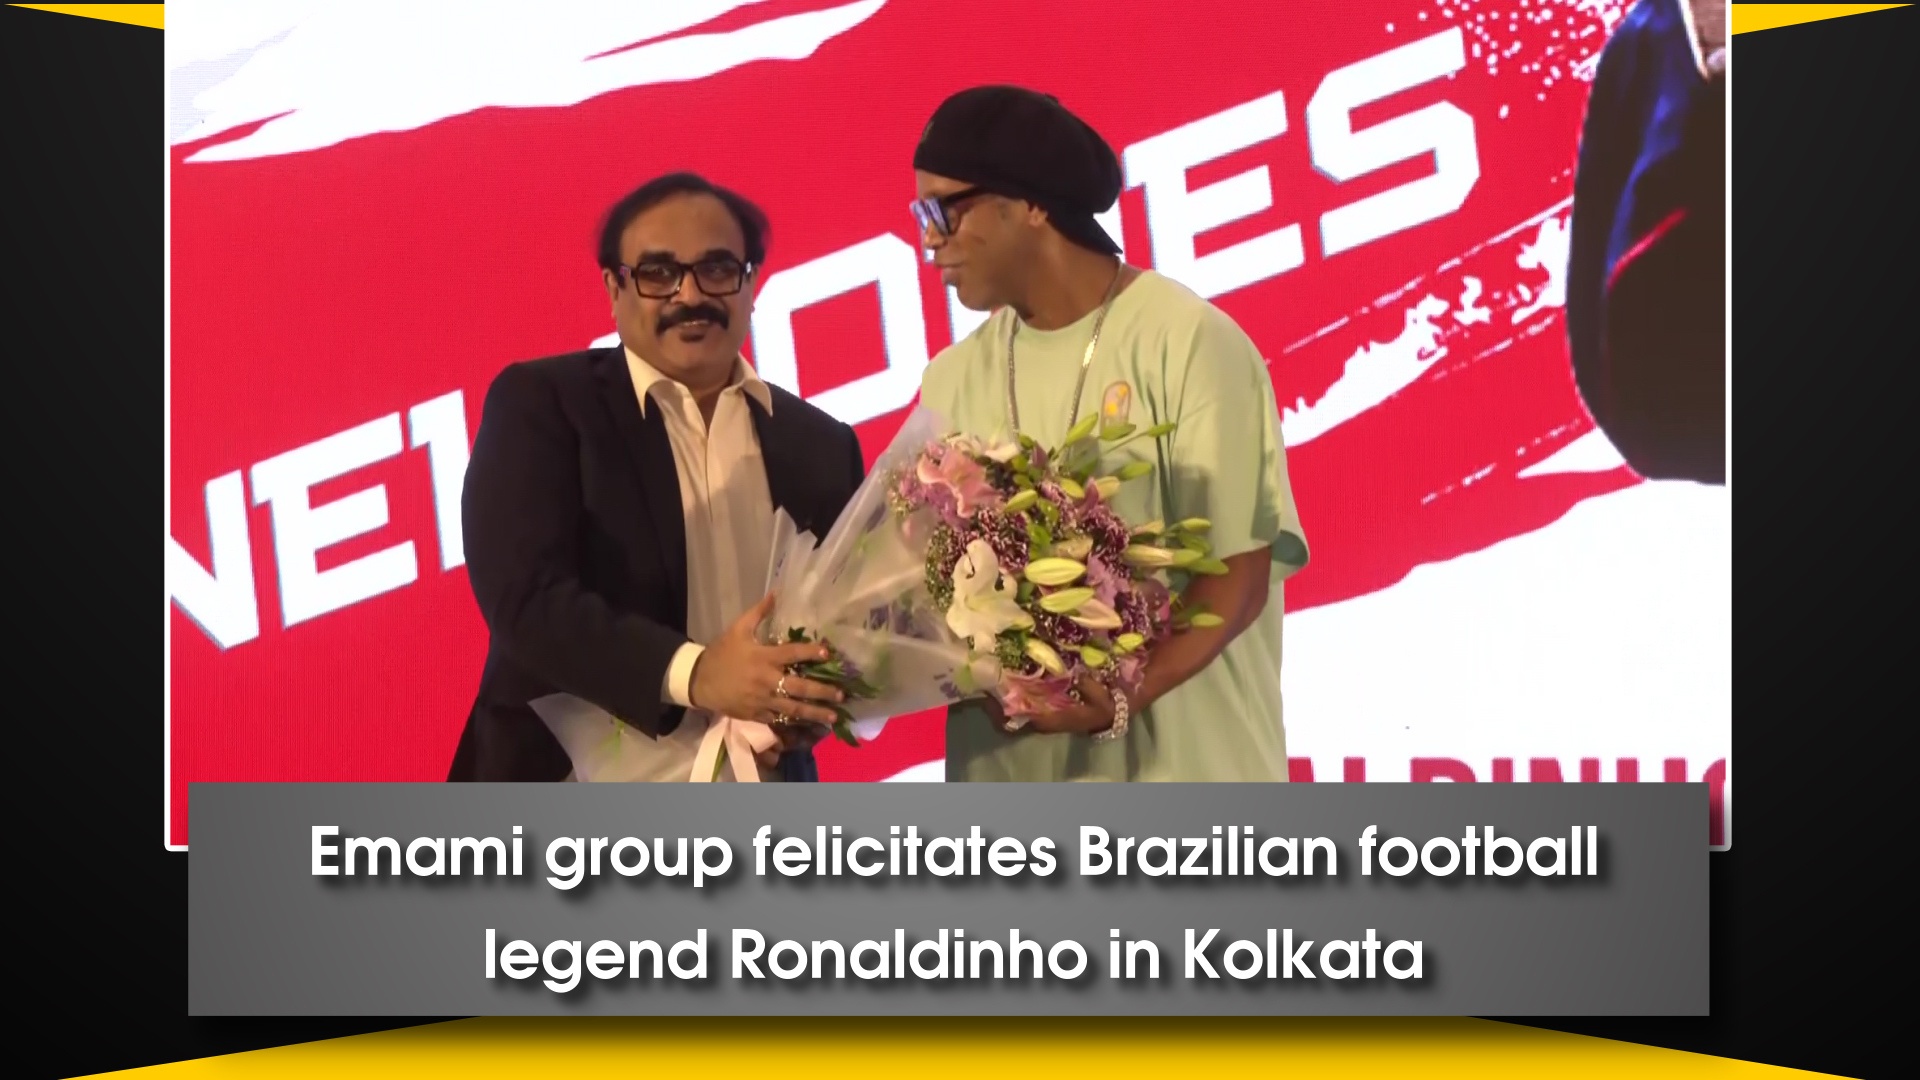 Emami group felicitates Brazilian football legend Ronaldinho in Kolkata